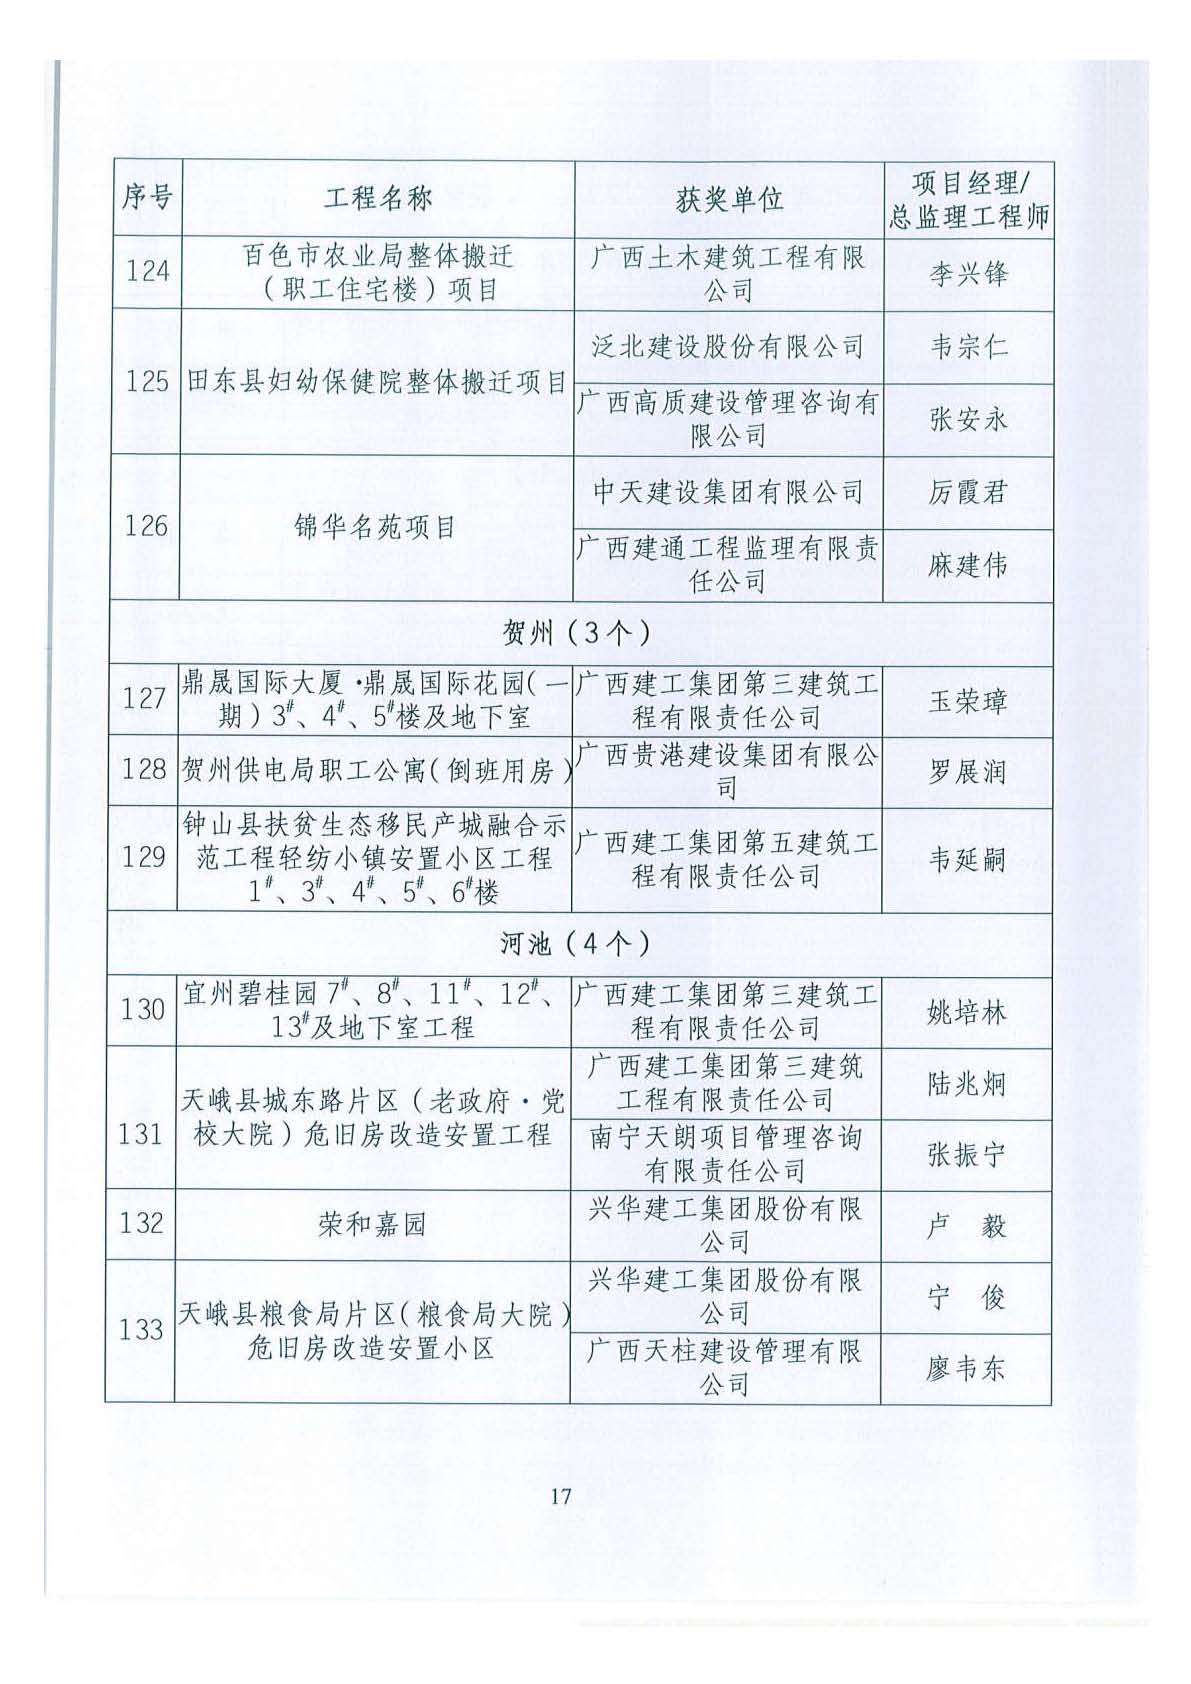 关于公布2018年下半年广西壮族自治区建设工程施工安全文明标准化工地的通知 _页面_17.jpg